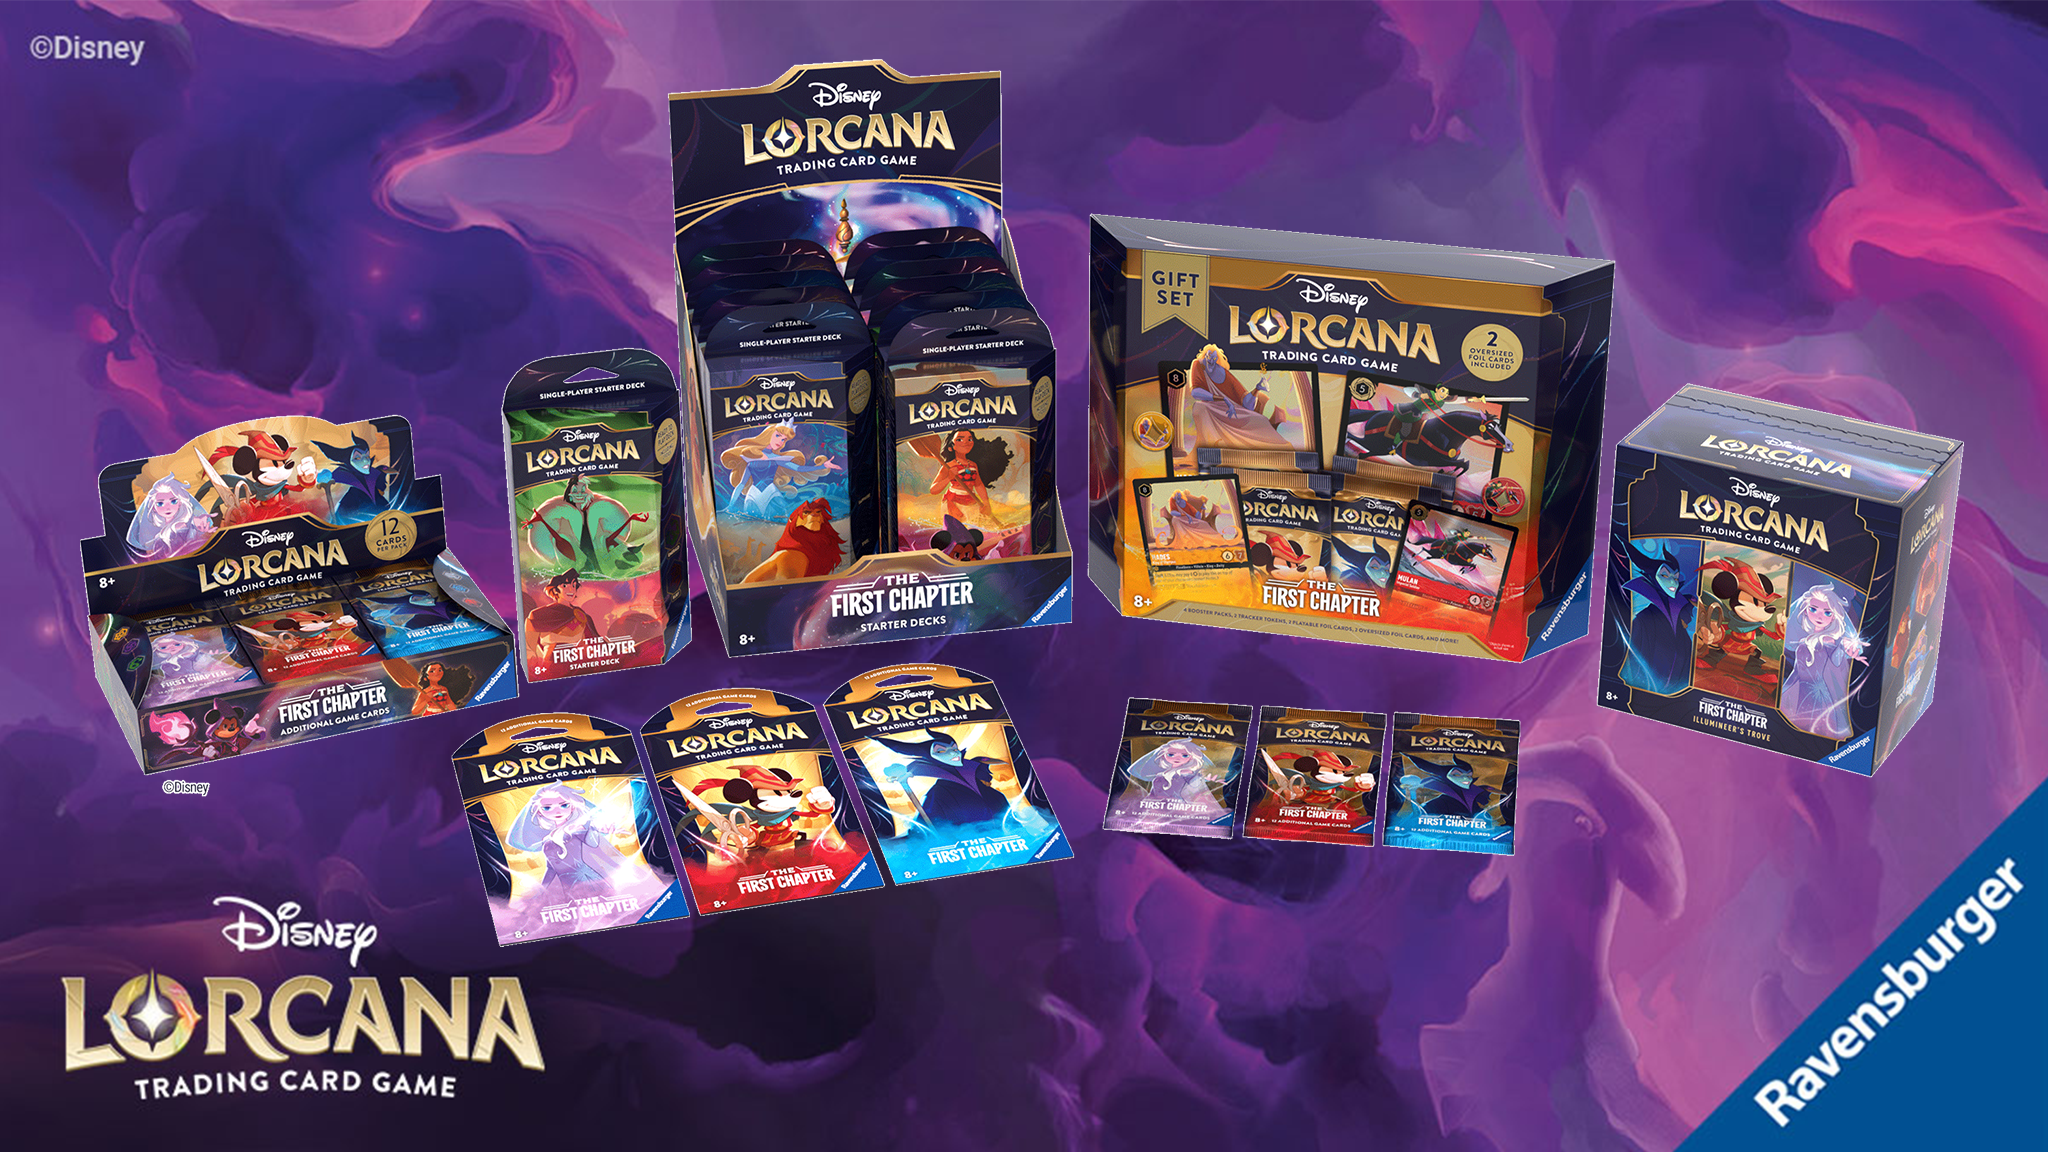 Lorcana products